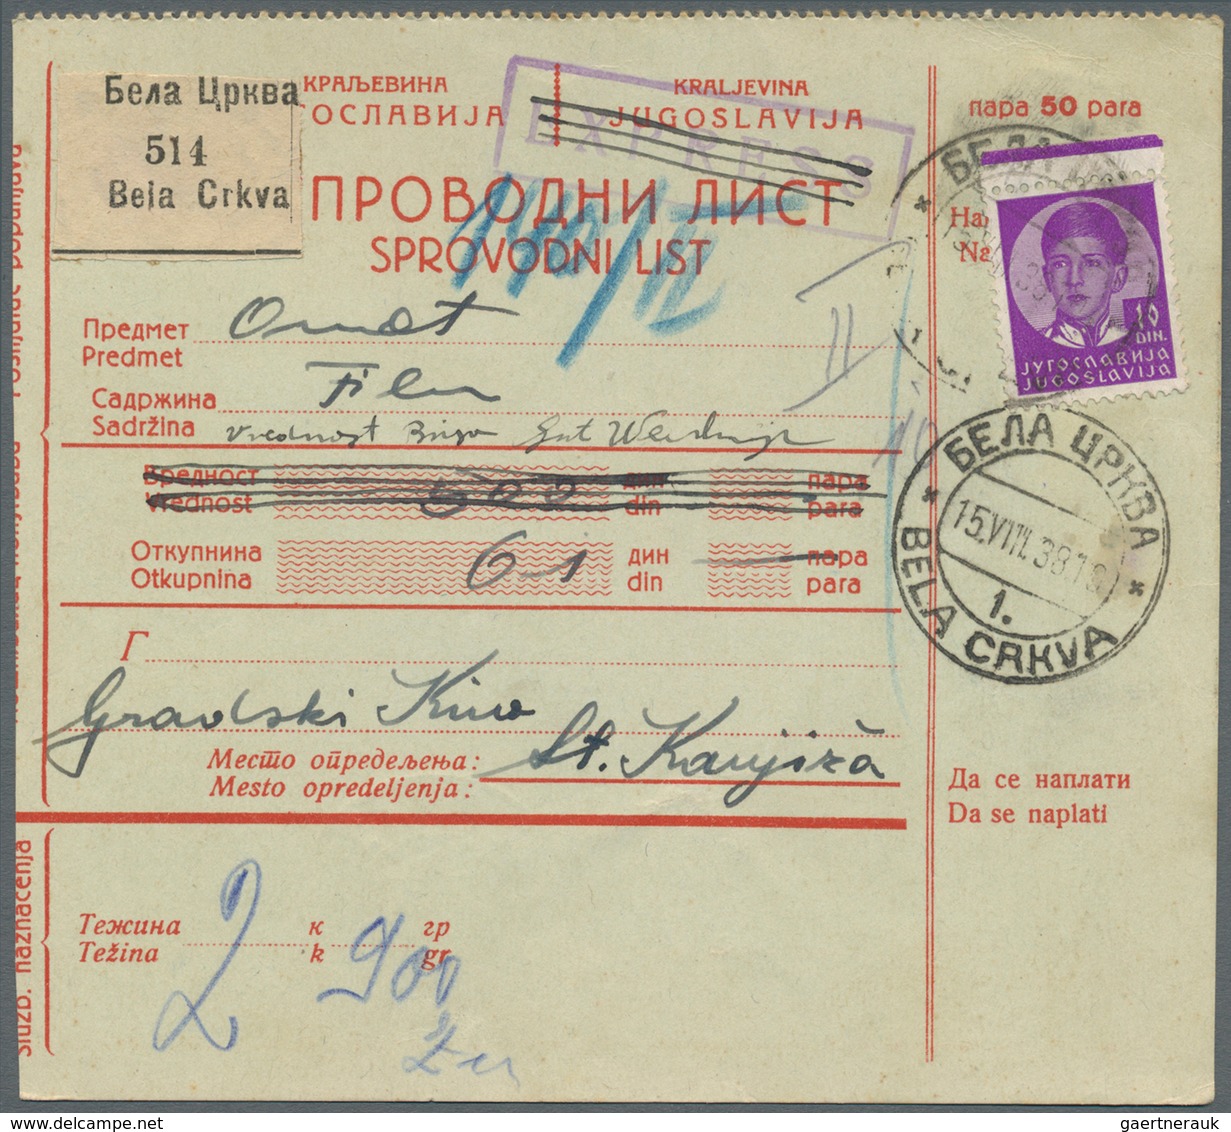 Jugoslawien: 1938/1941 (ca.), unglaublicher Bestand von ca. 1.800 Paketkarten mit sehr vielen unters